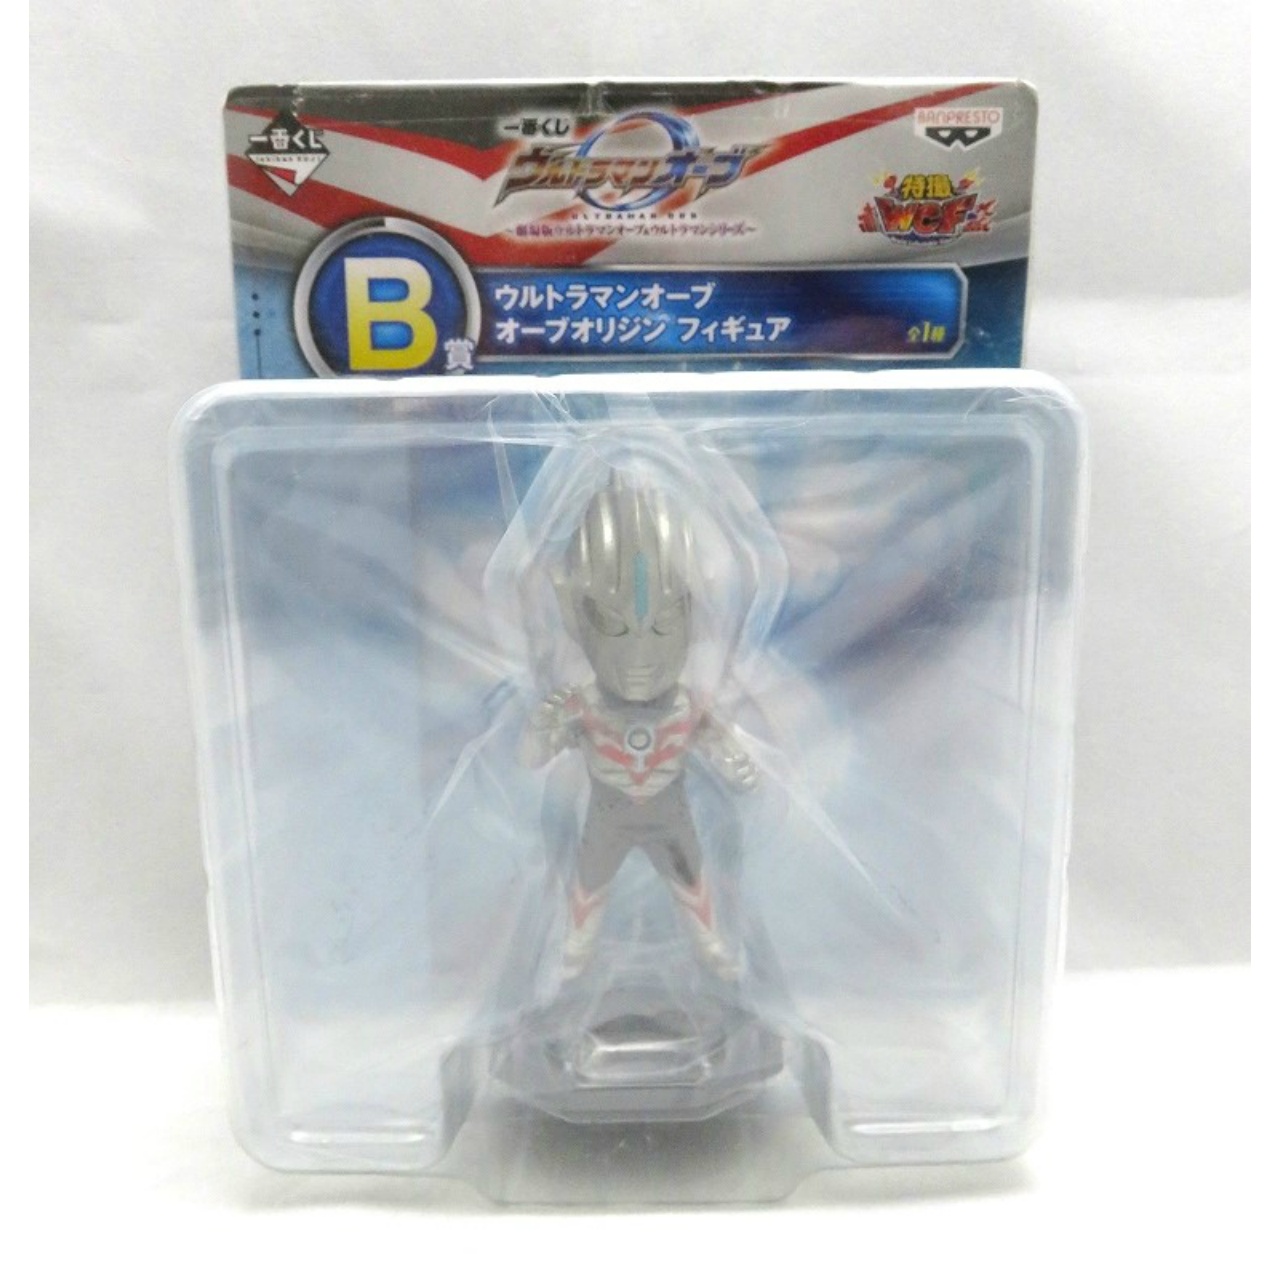 JUNGLE Special Collectors Shop / Ultraman